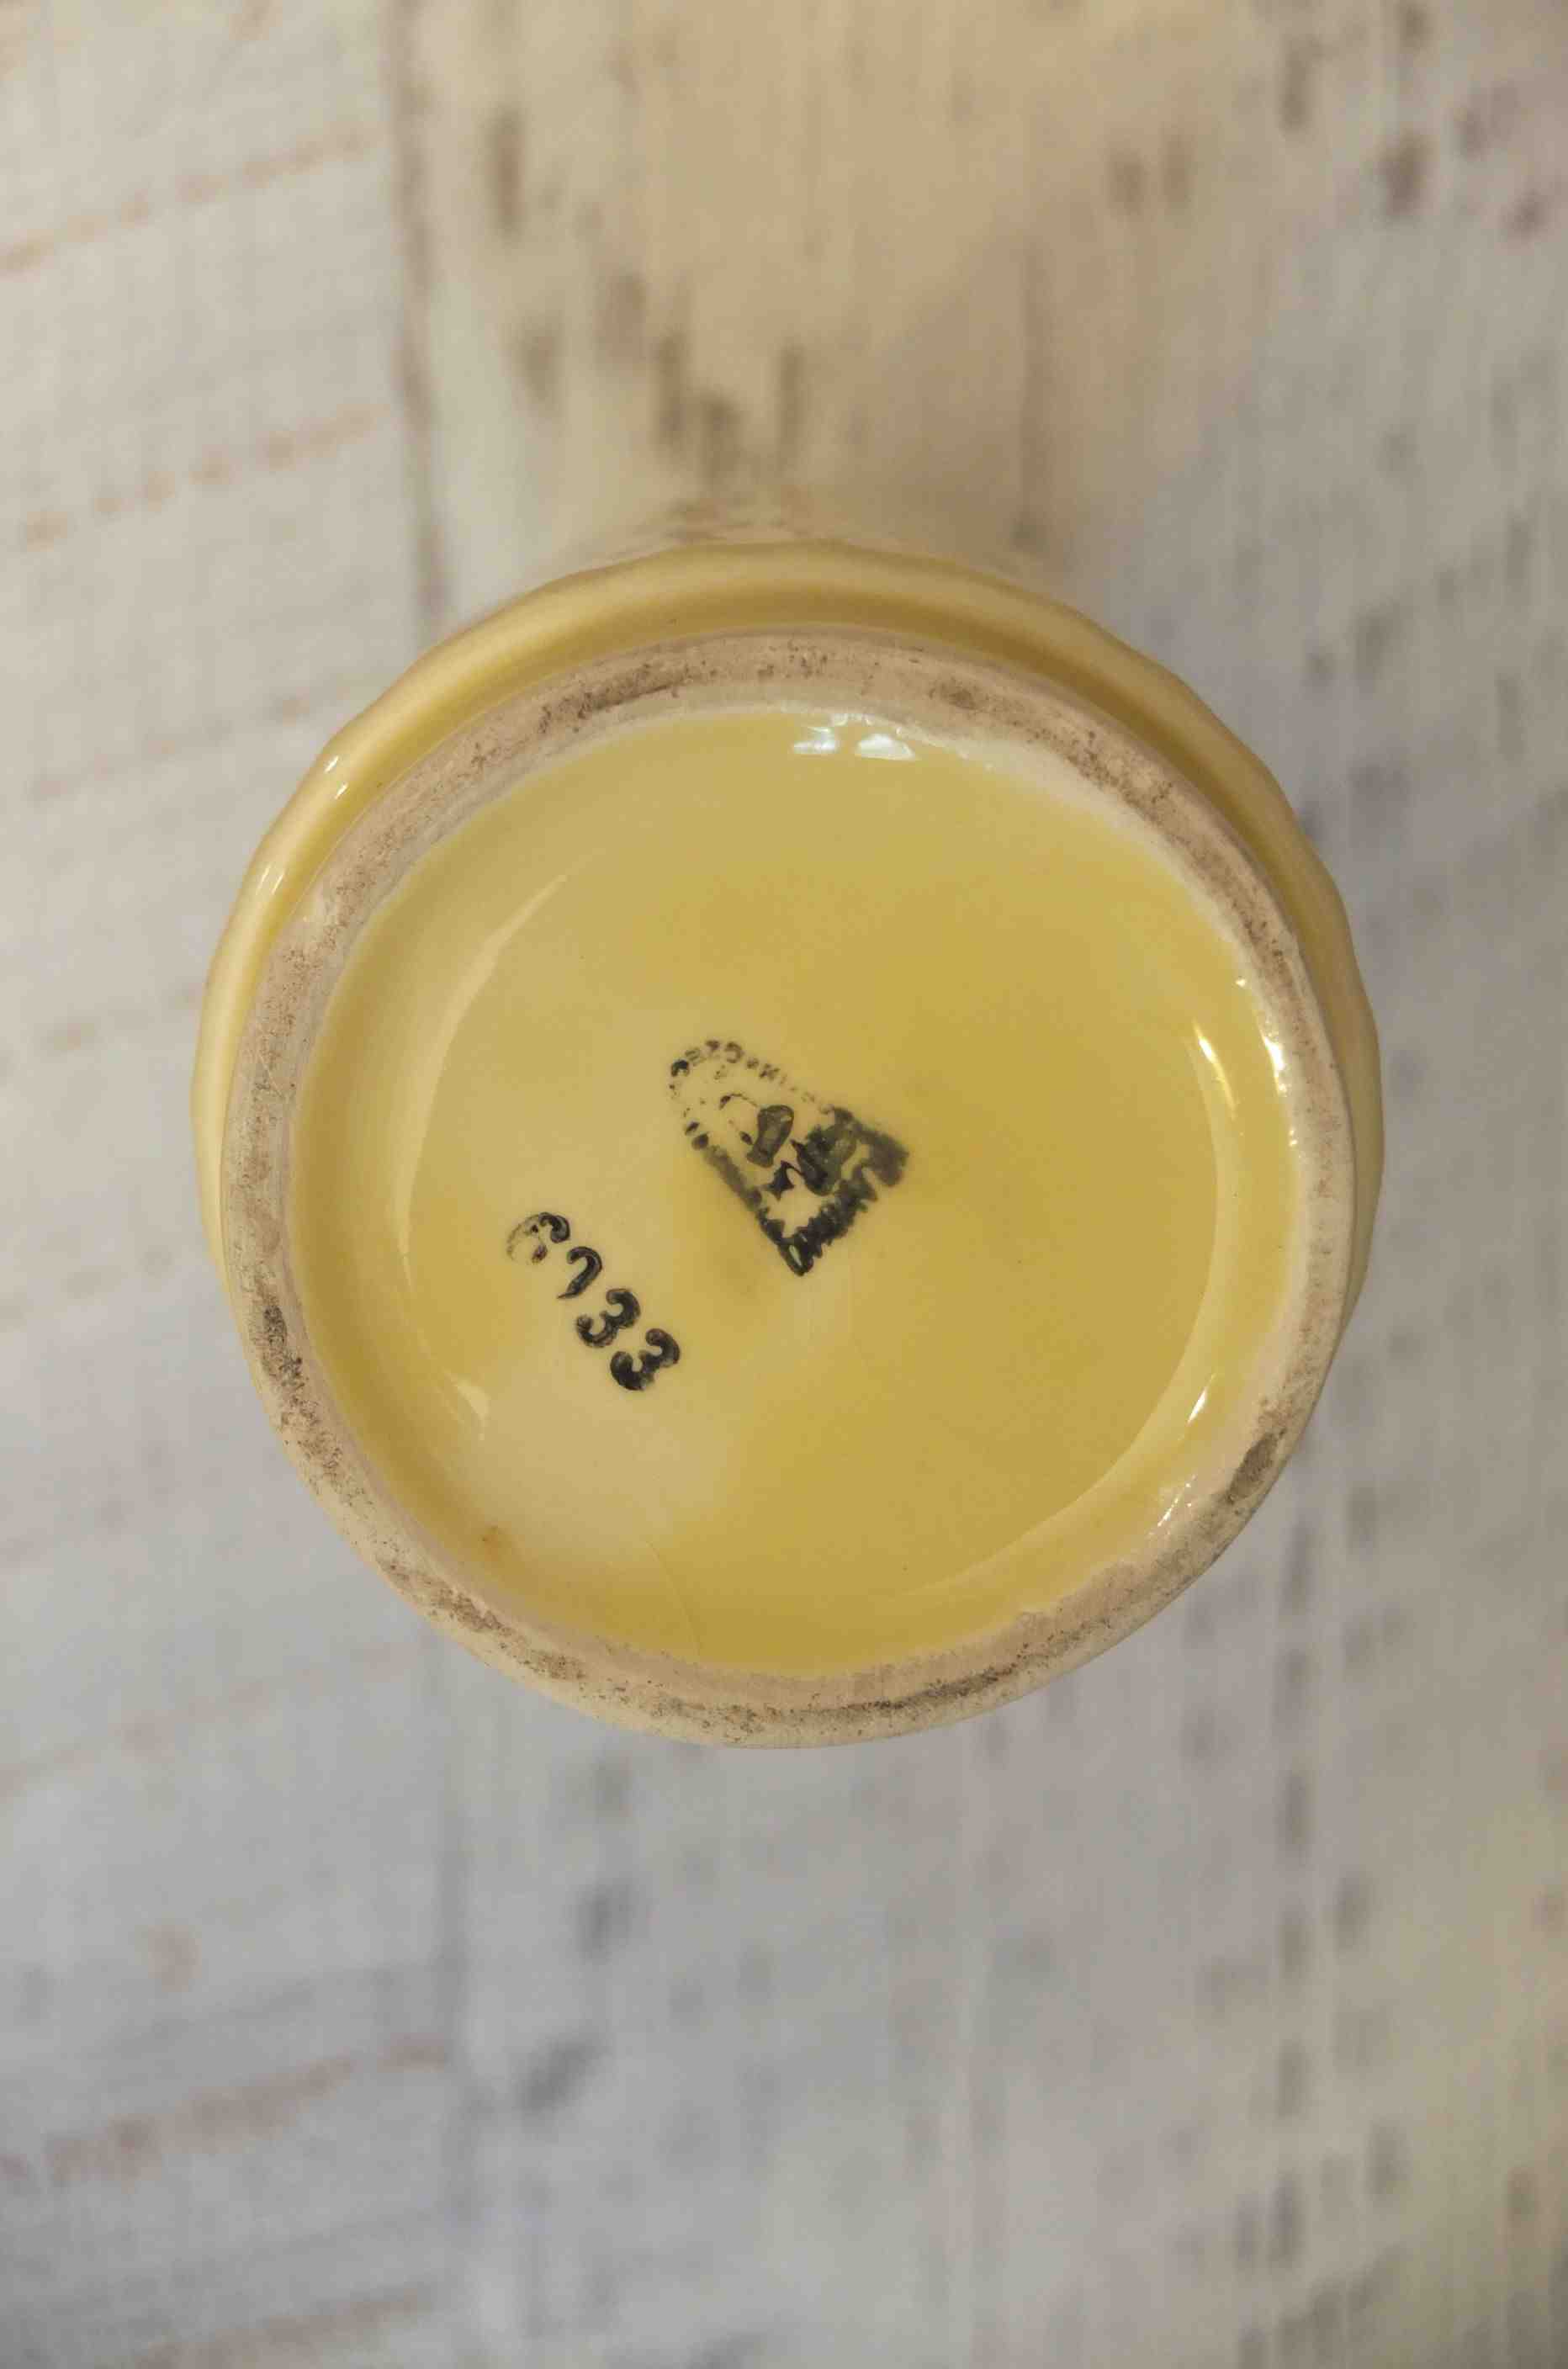 Slavia Vintage vase en porcelaine des annees 60 tchecoslovaque "Vanilla" inscription